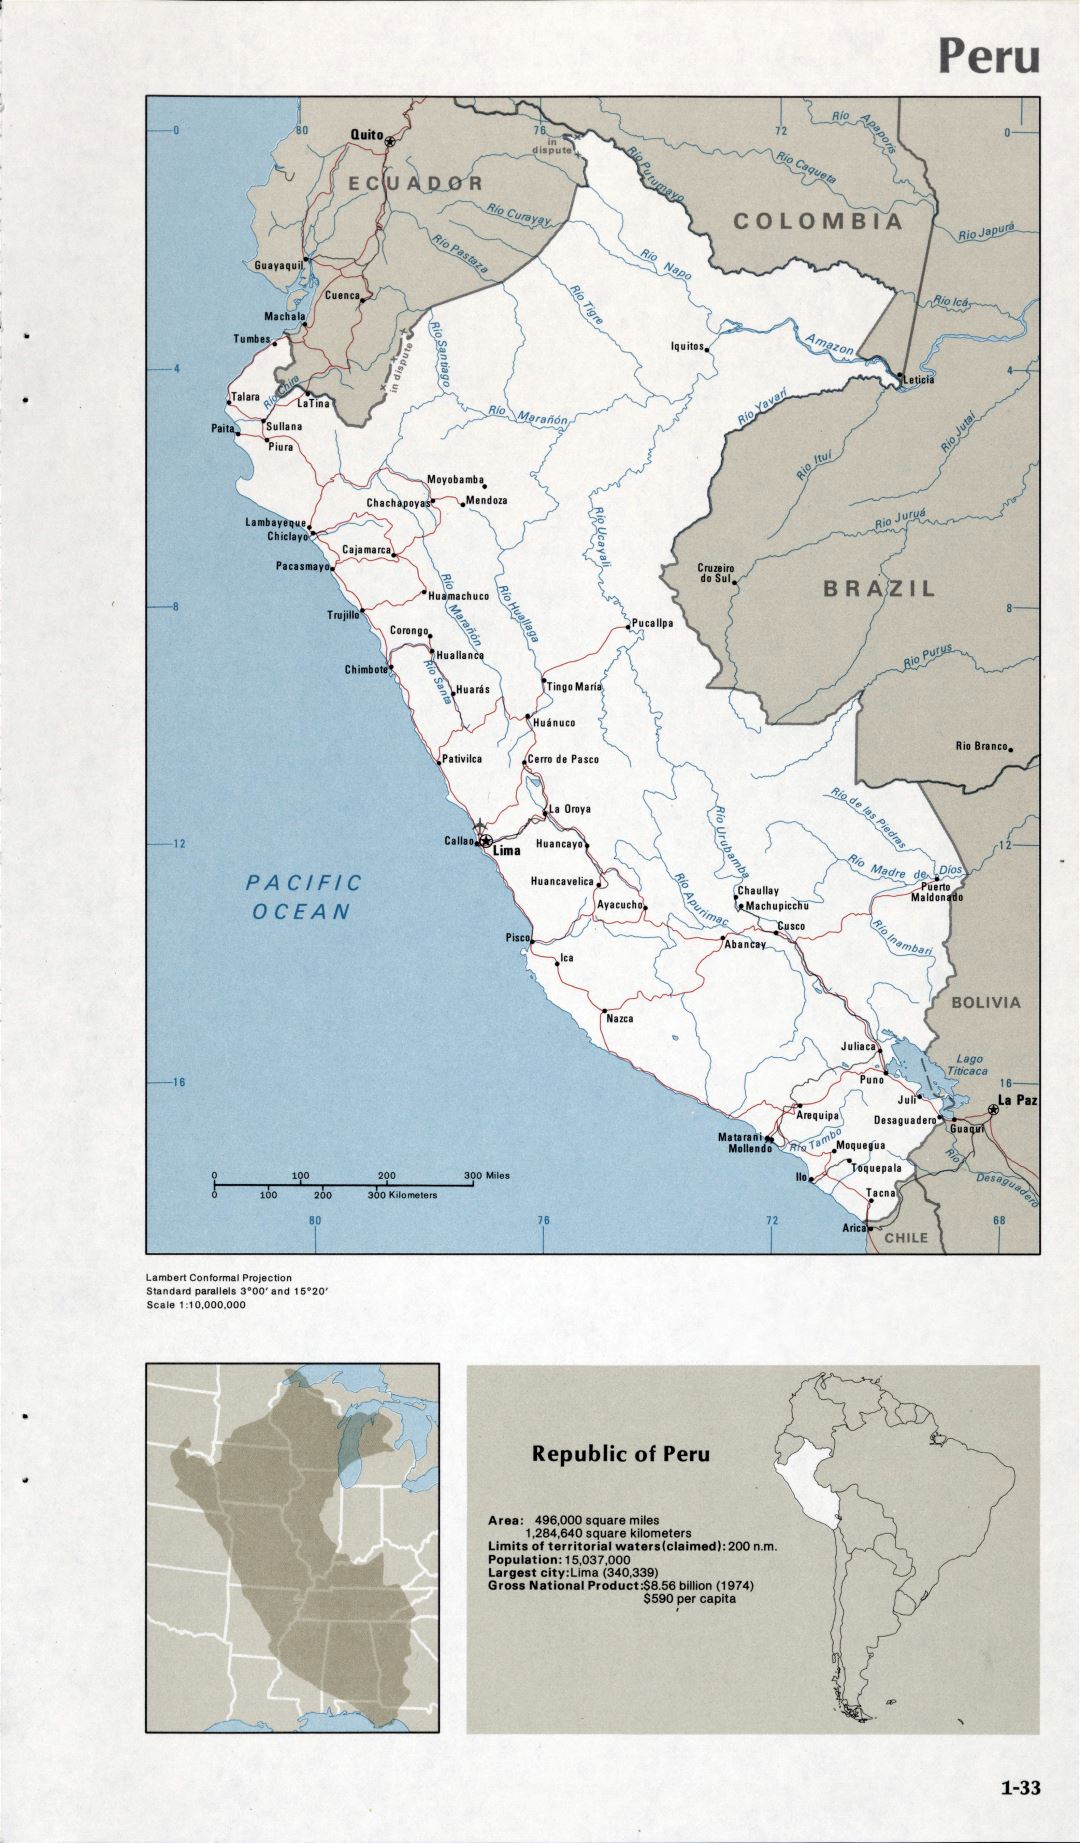 Map of Peru (1-33)